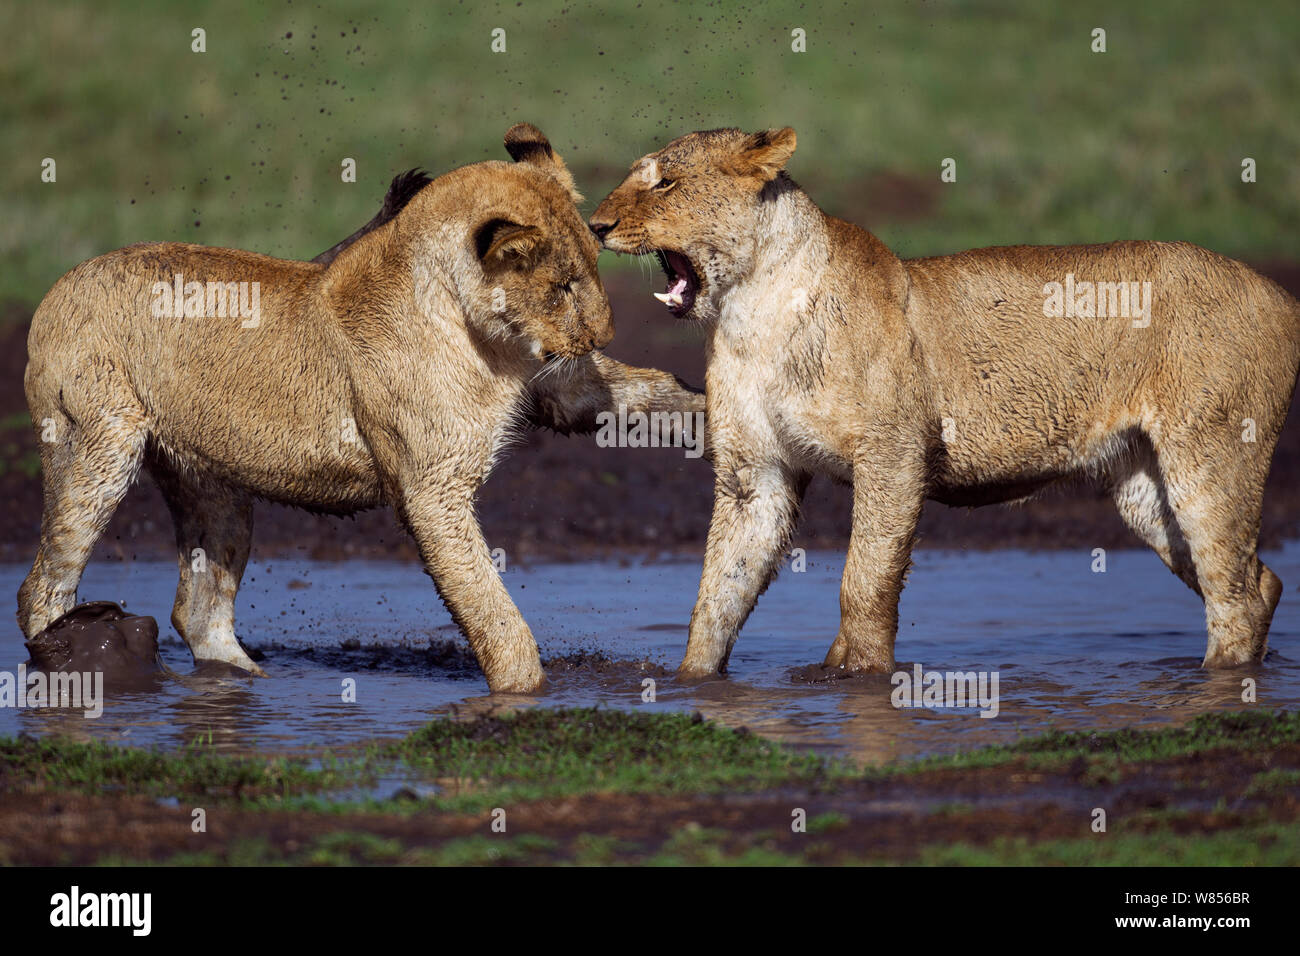 León Africano (Panthera leo) cachorros de edades comprendidas entre los 18 y 24 meses jugando en un orificio de agua, Reserva Nacional de Masai Mara, Kenya. Marzo Foto de stock